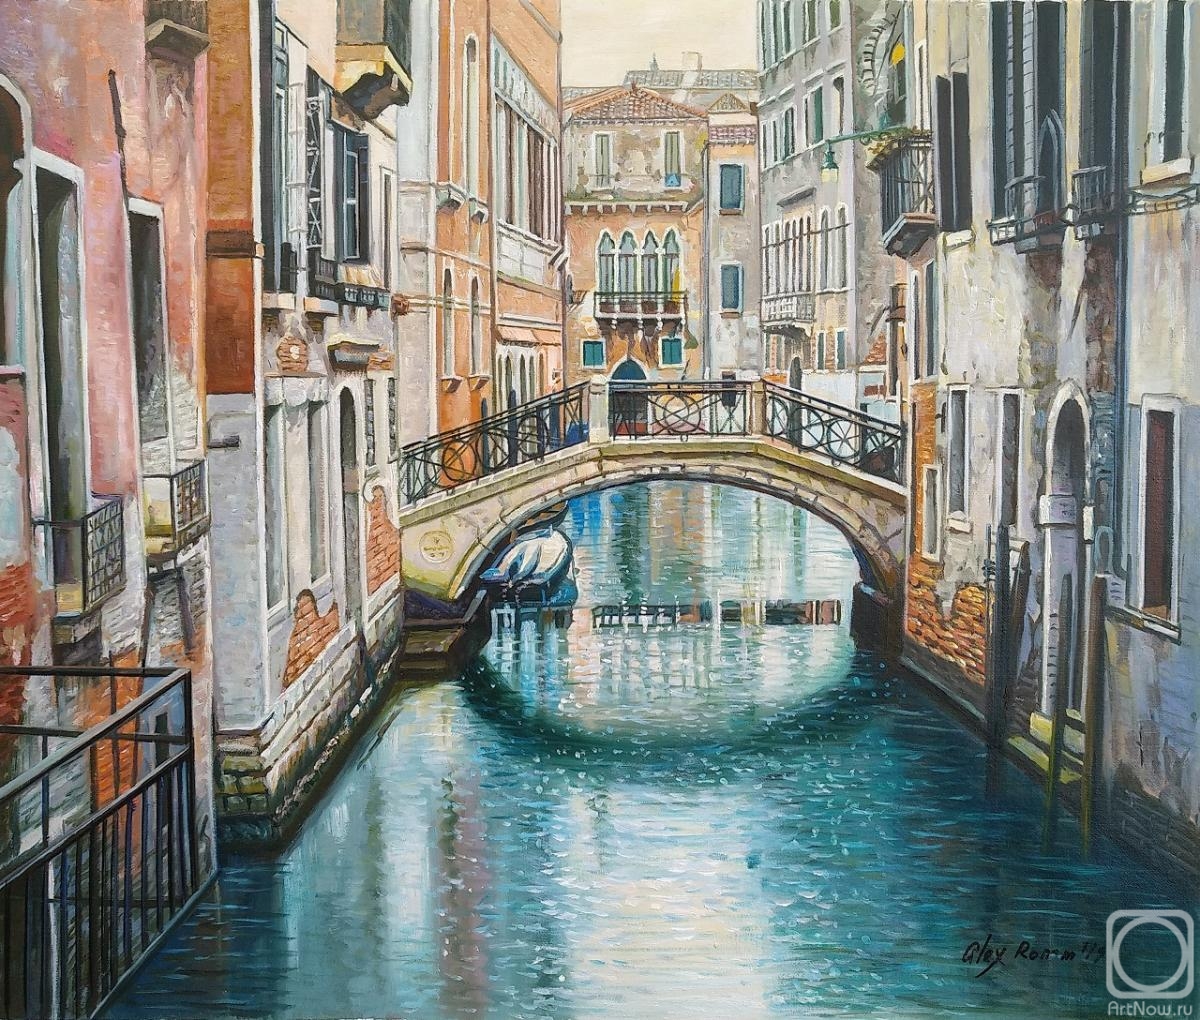 Romm Alexandr. Venetian vacation. A walk along the canals